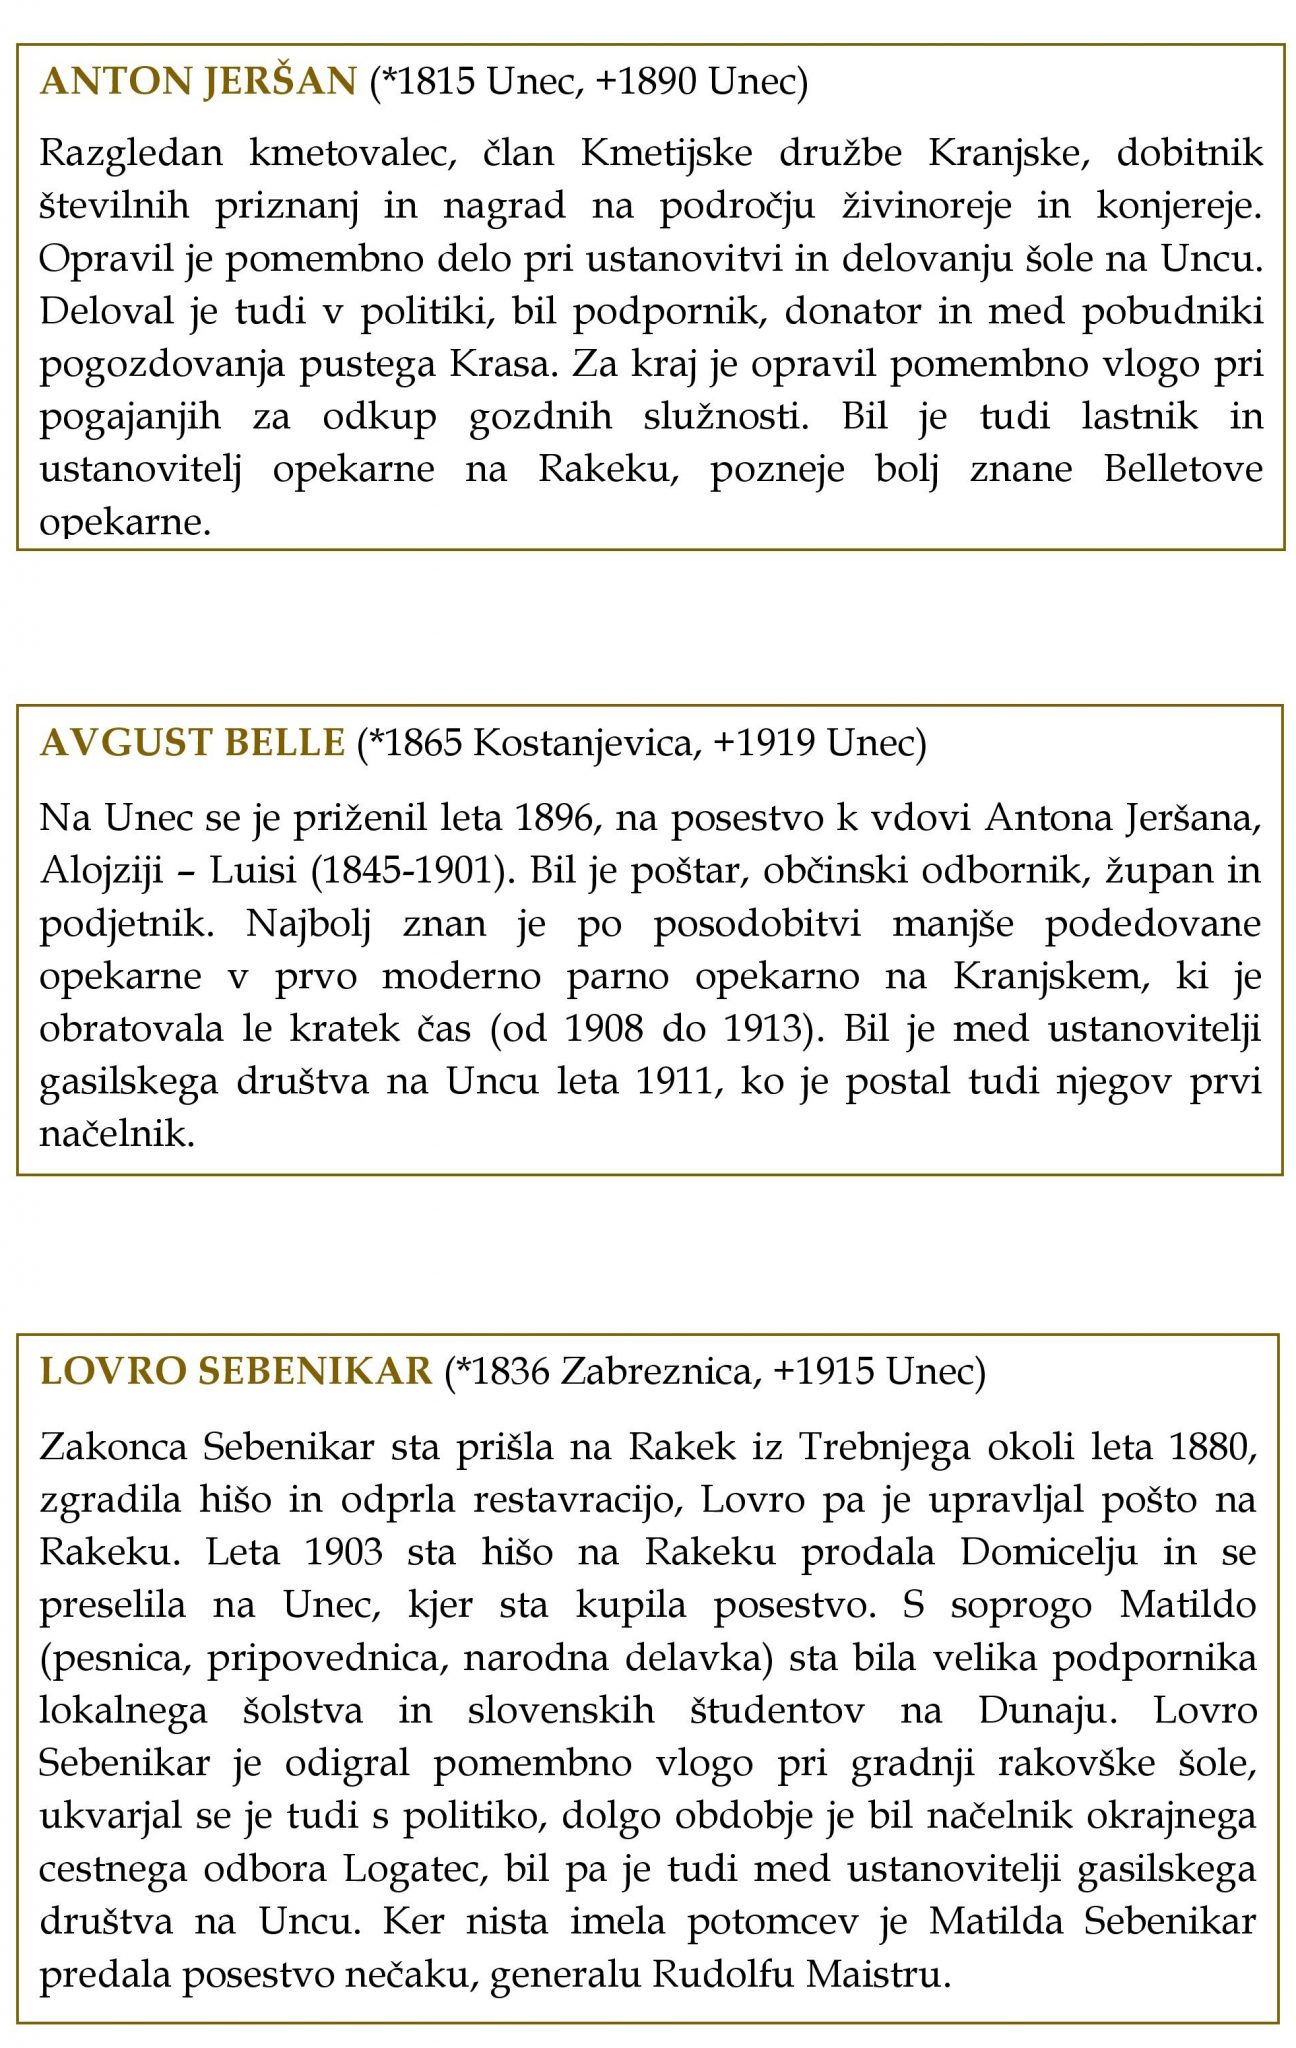 cover2 2 - Anton Jeršan, Avgust Belle in Lovro Sebenikar